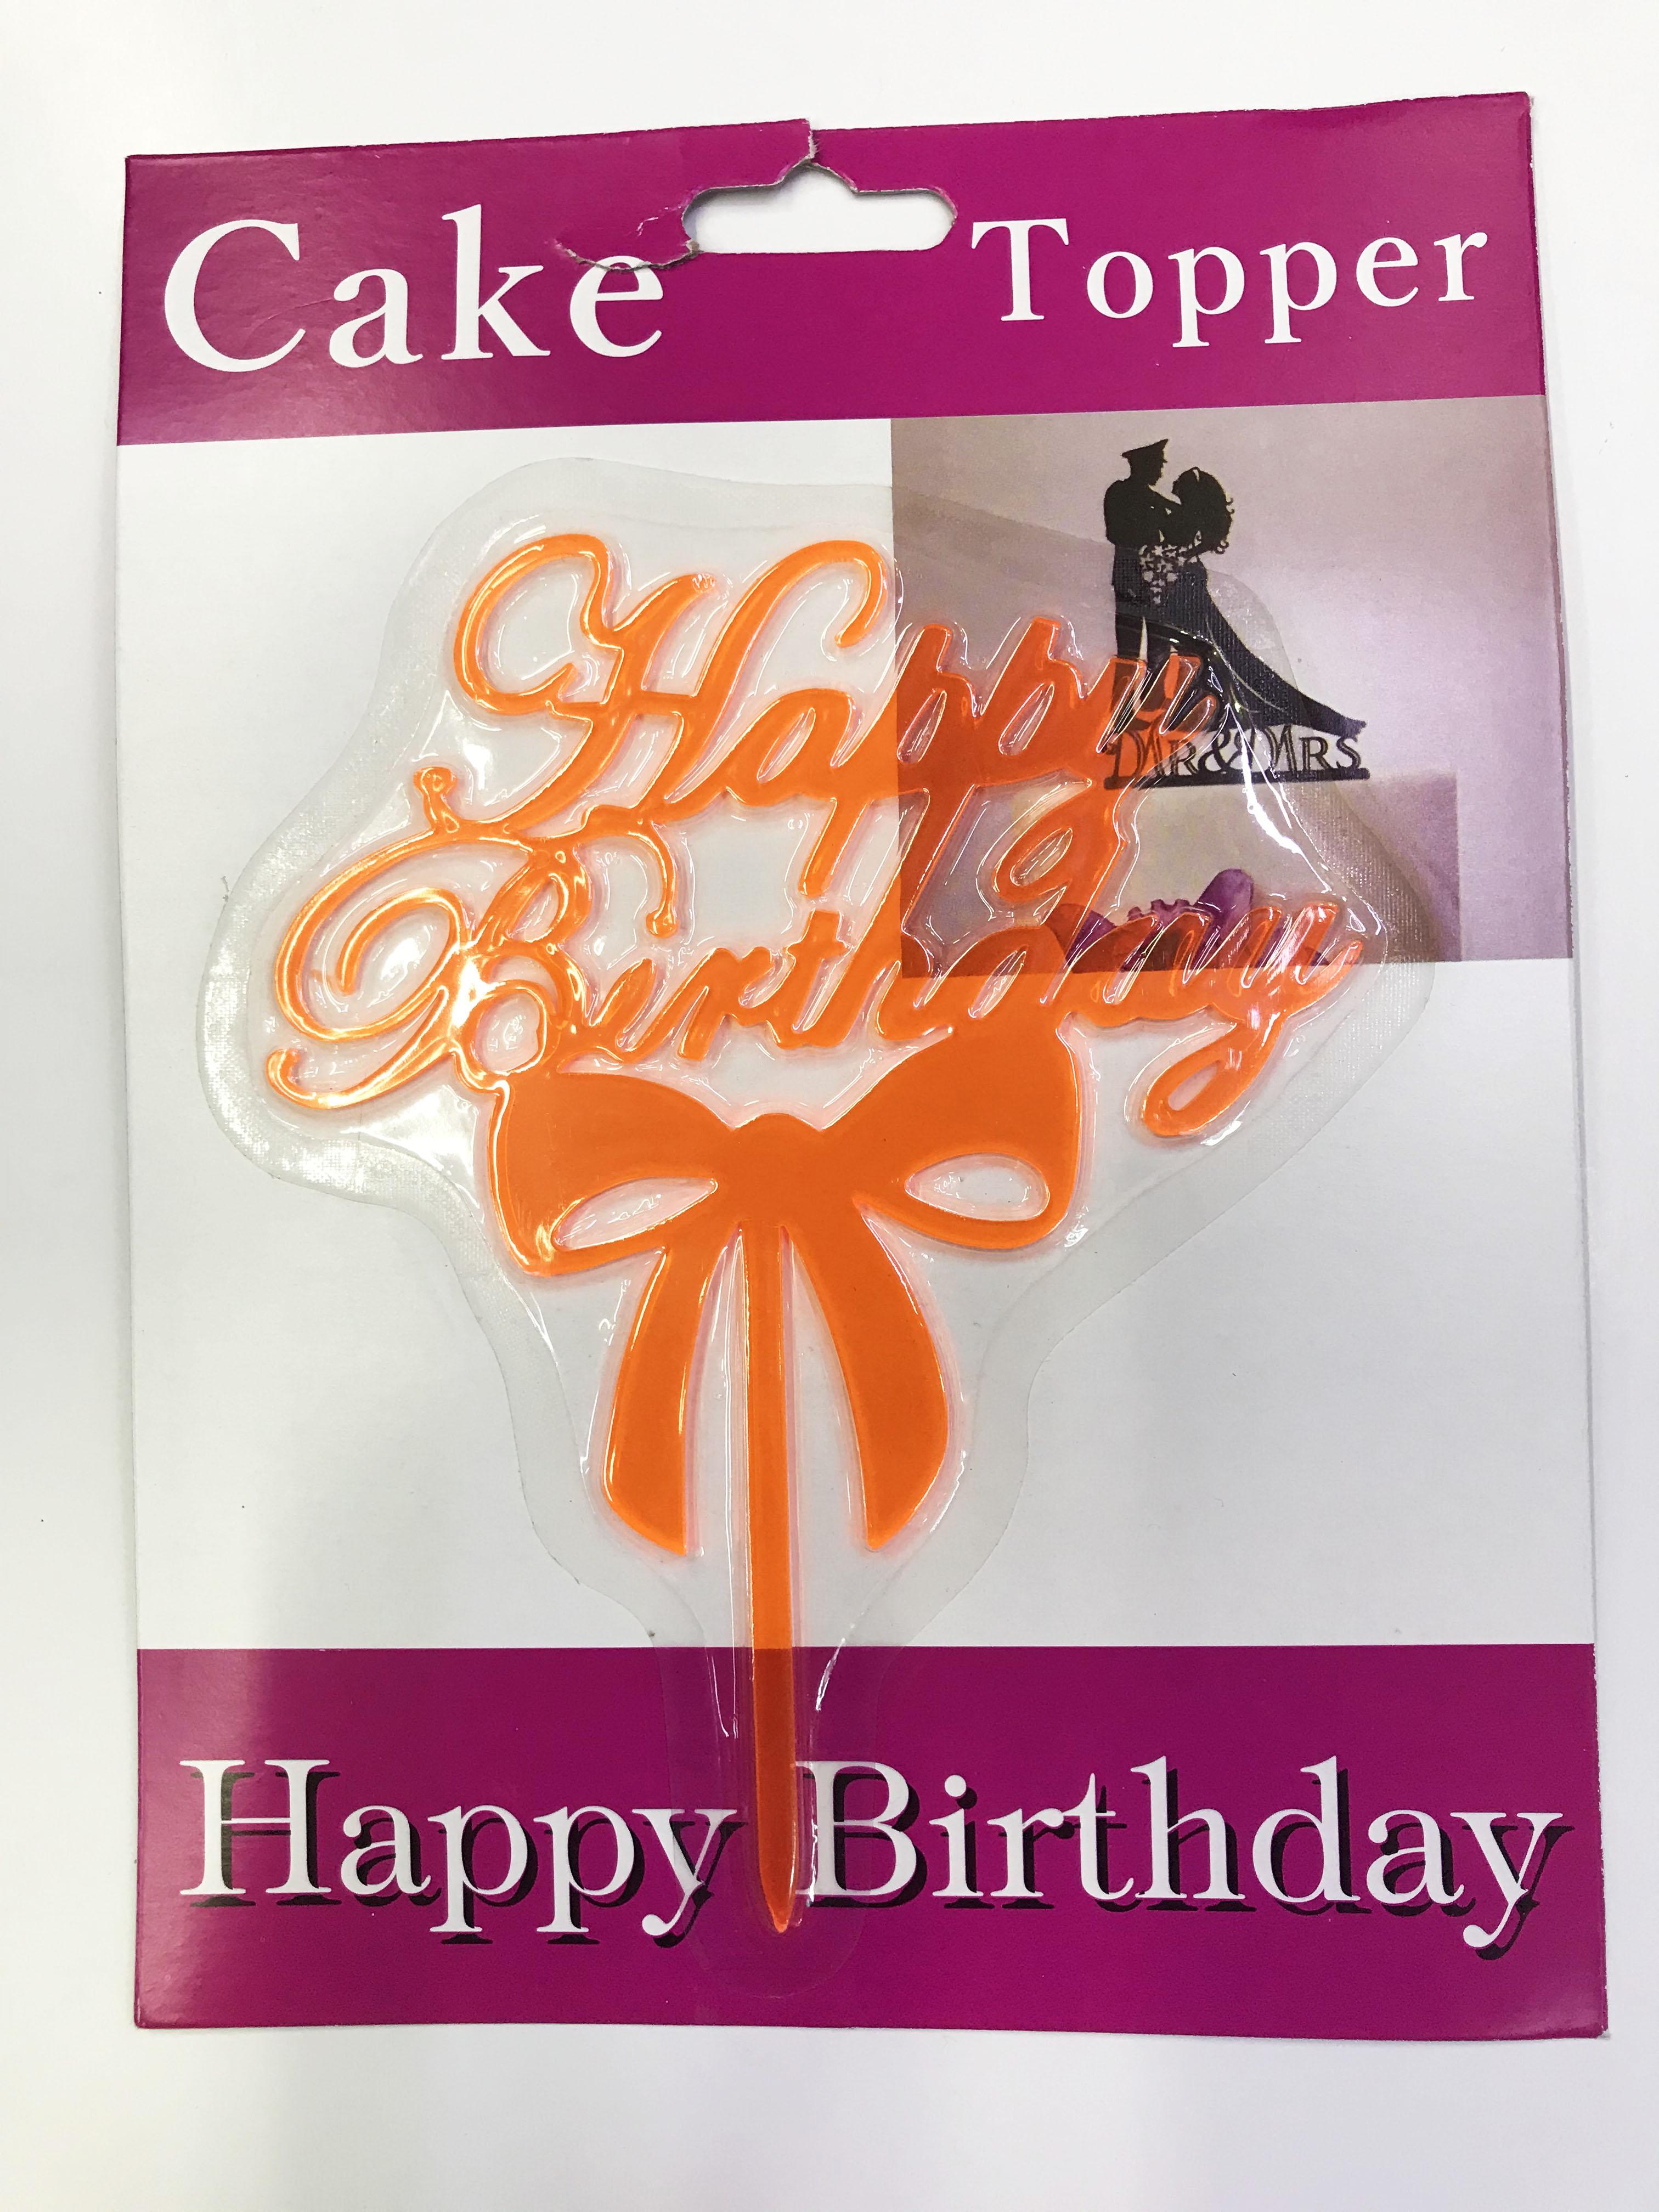 Happy Birthday Yazılı Fiyonklu Pasta Kek Çubuğu Turuncu Renk (4172)